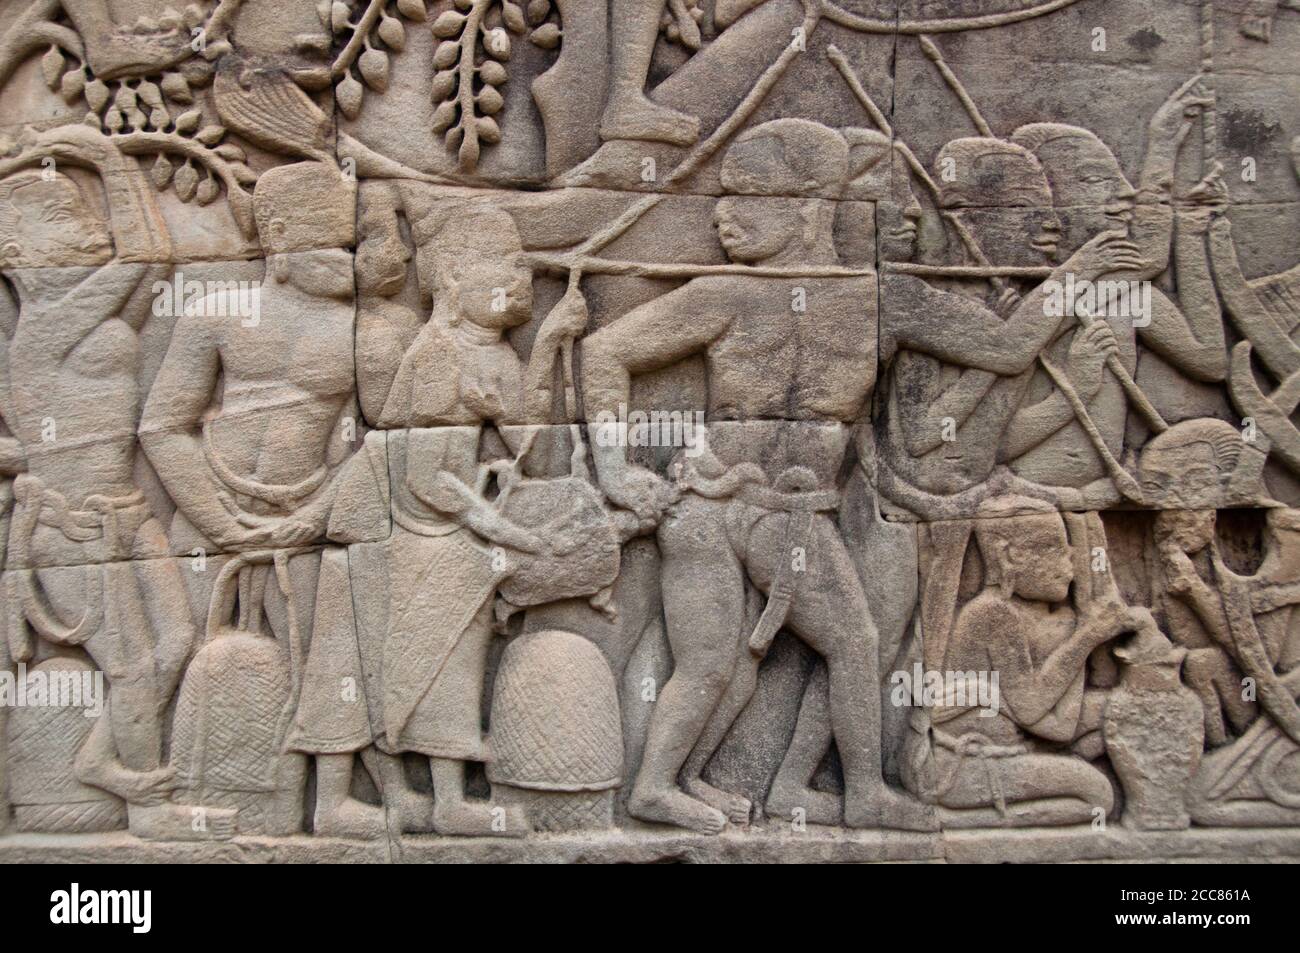 Cambodge: Une femme secoue une tortue dans le fond d'un soldat en lui donnant un choc alors que l'armée khmère avance, le bas-secours mur de l'est, la section sud, le Bayon, Angkor Thom. Le Bayon était à l'origine le temple officiel du roi bouddhiste Mahayana Jayavarman VII Le Bayon, au centre d'Angkor Thom (Grande ville), fut fondé au XIIe siècle par le roi Jayavarman VII Angkor Thom, signifiant "la Grande ville", est situé à un mile au nord d'Angkor Wat. Il a été construit à la fin du XIIe siècle ce par le roi Jayavarman VII Banque D'Images